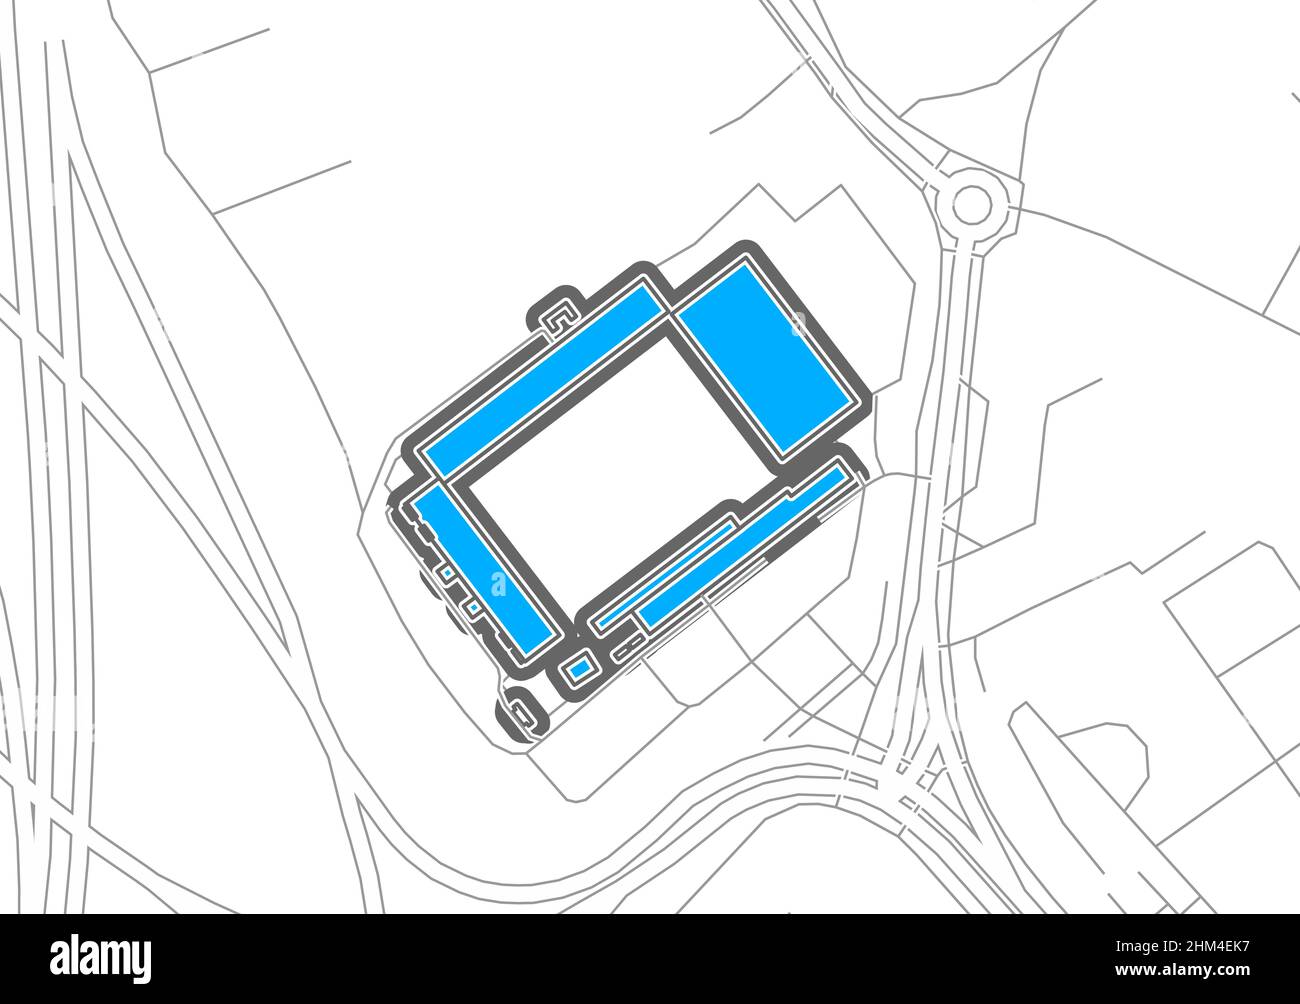 Kiel, stade de football, carte vectorielle.La carte bundesliga statium a été tracée avec des zones blanches et des lignes pour les routes principales, les routes latérales. Illustration de Vecteur